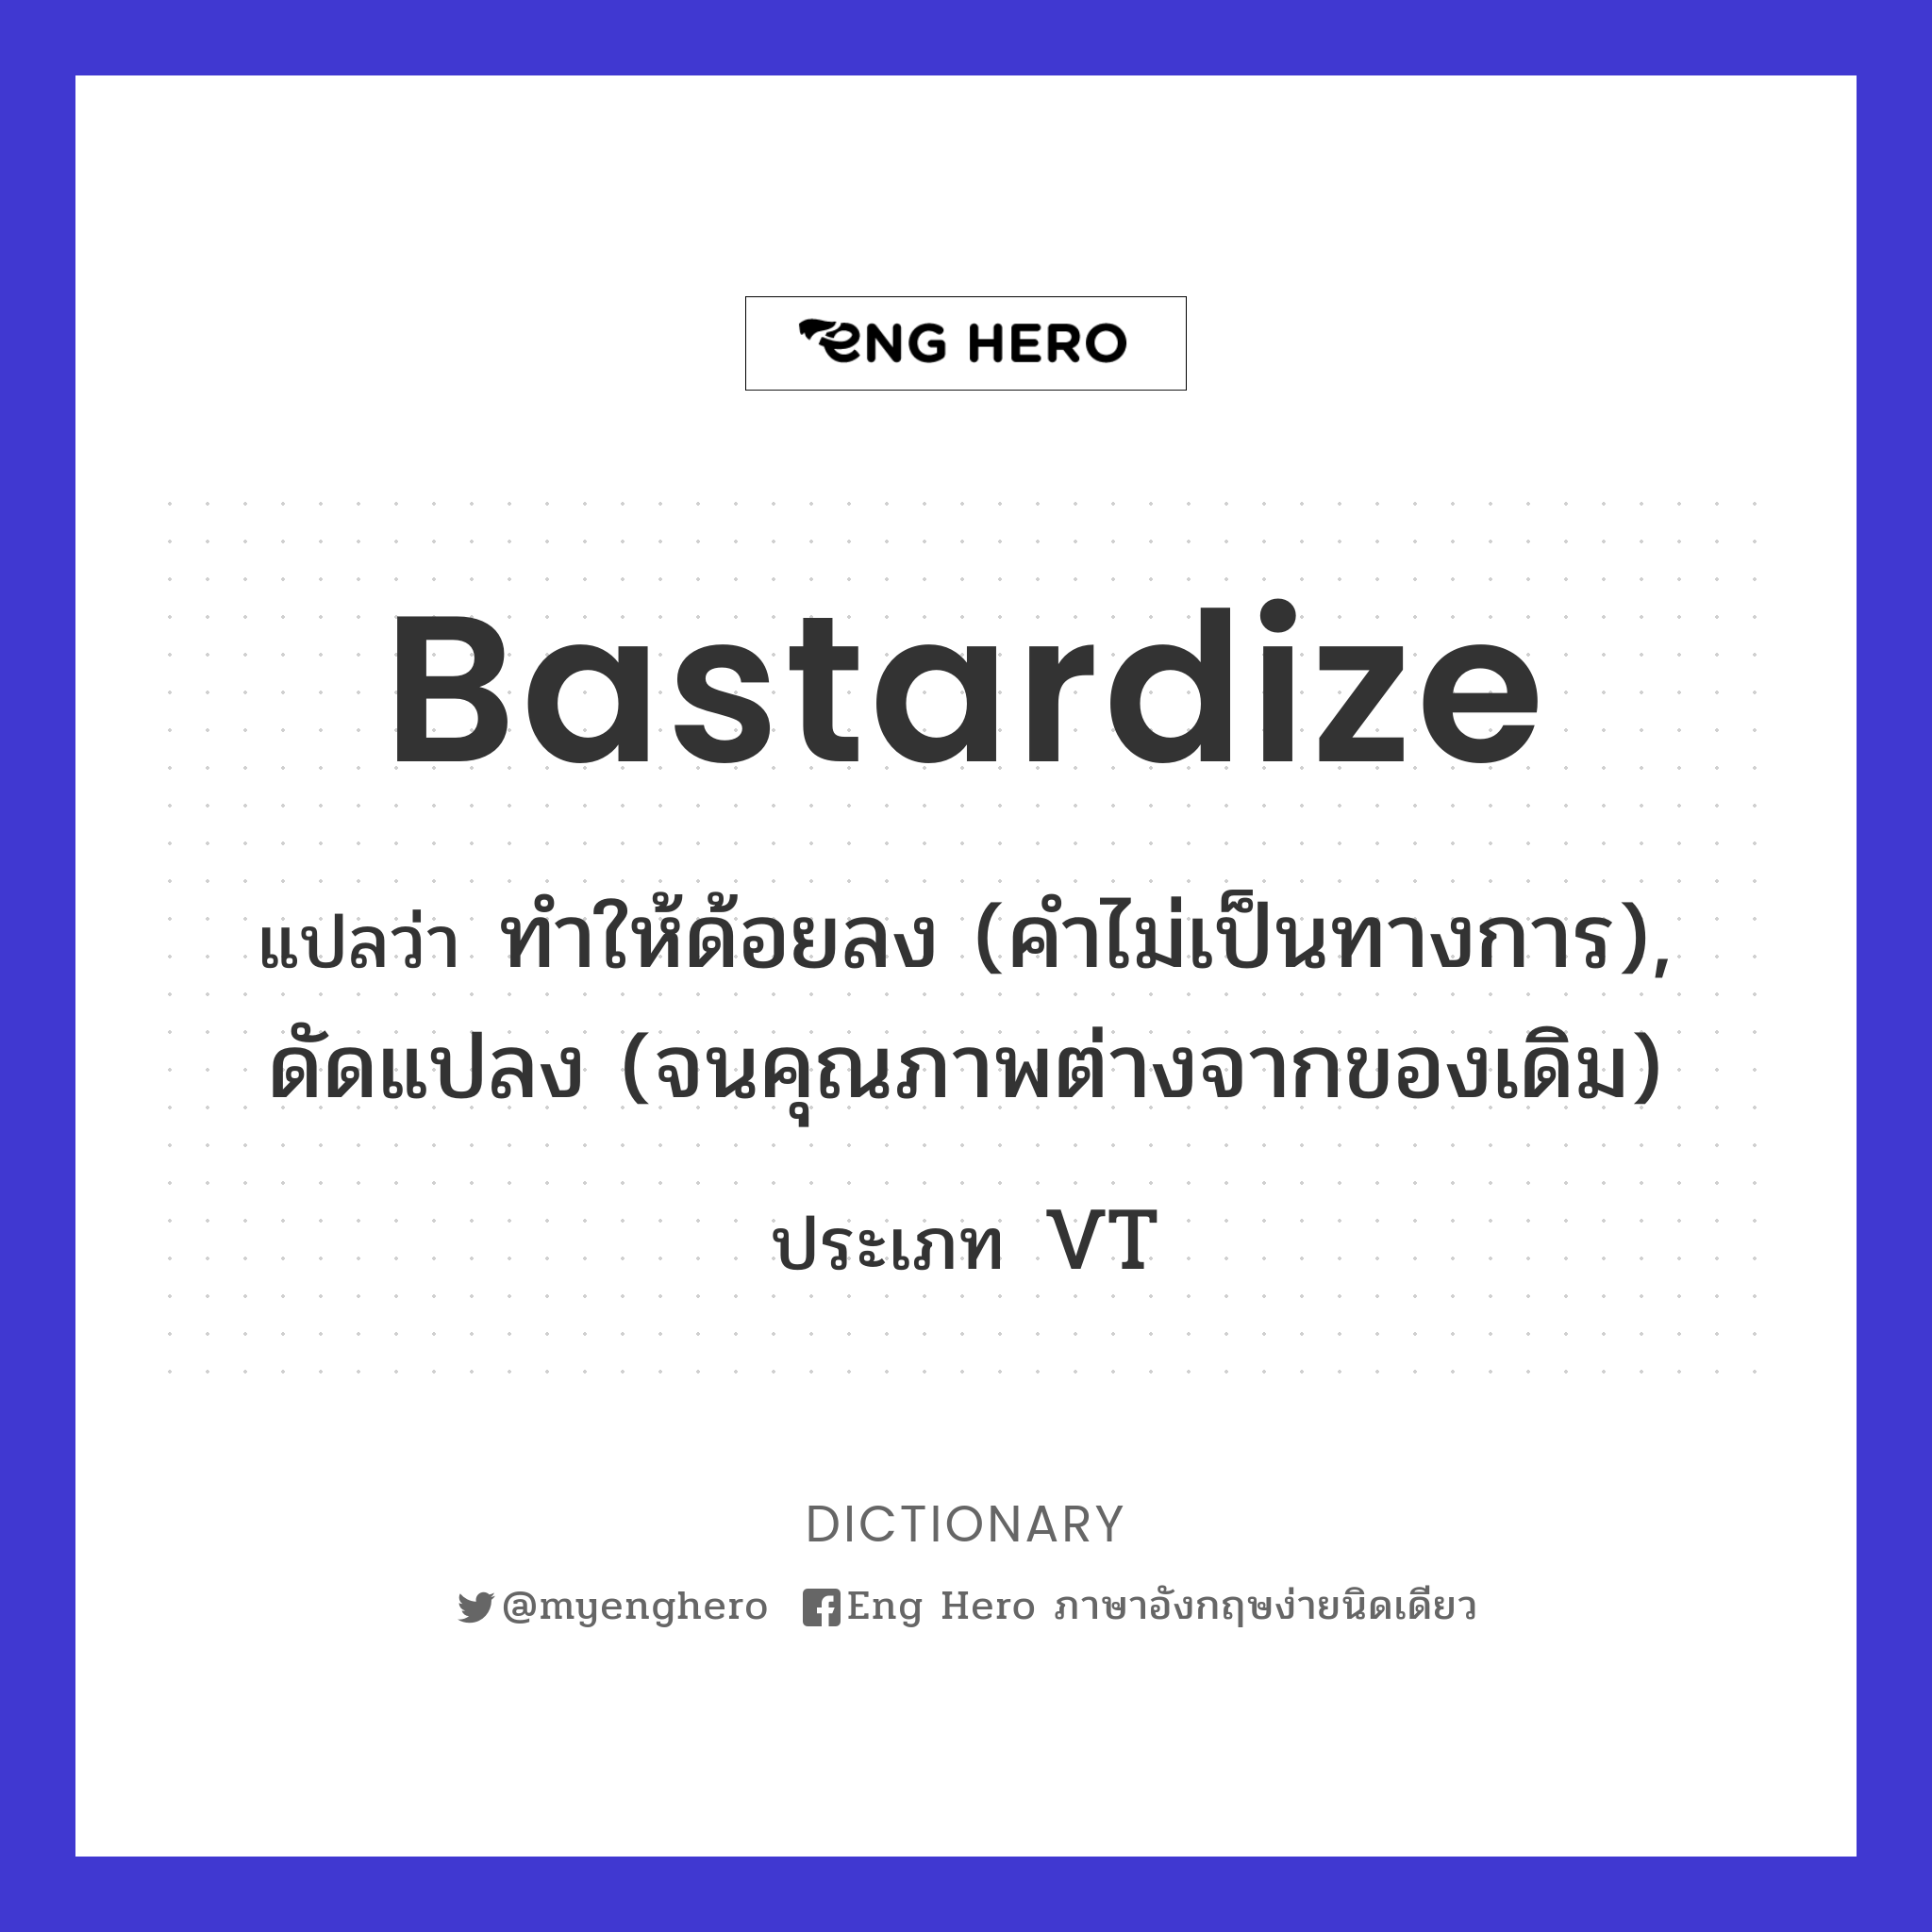 bastardize